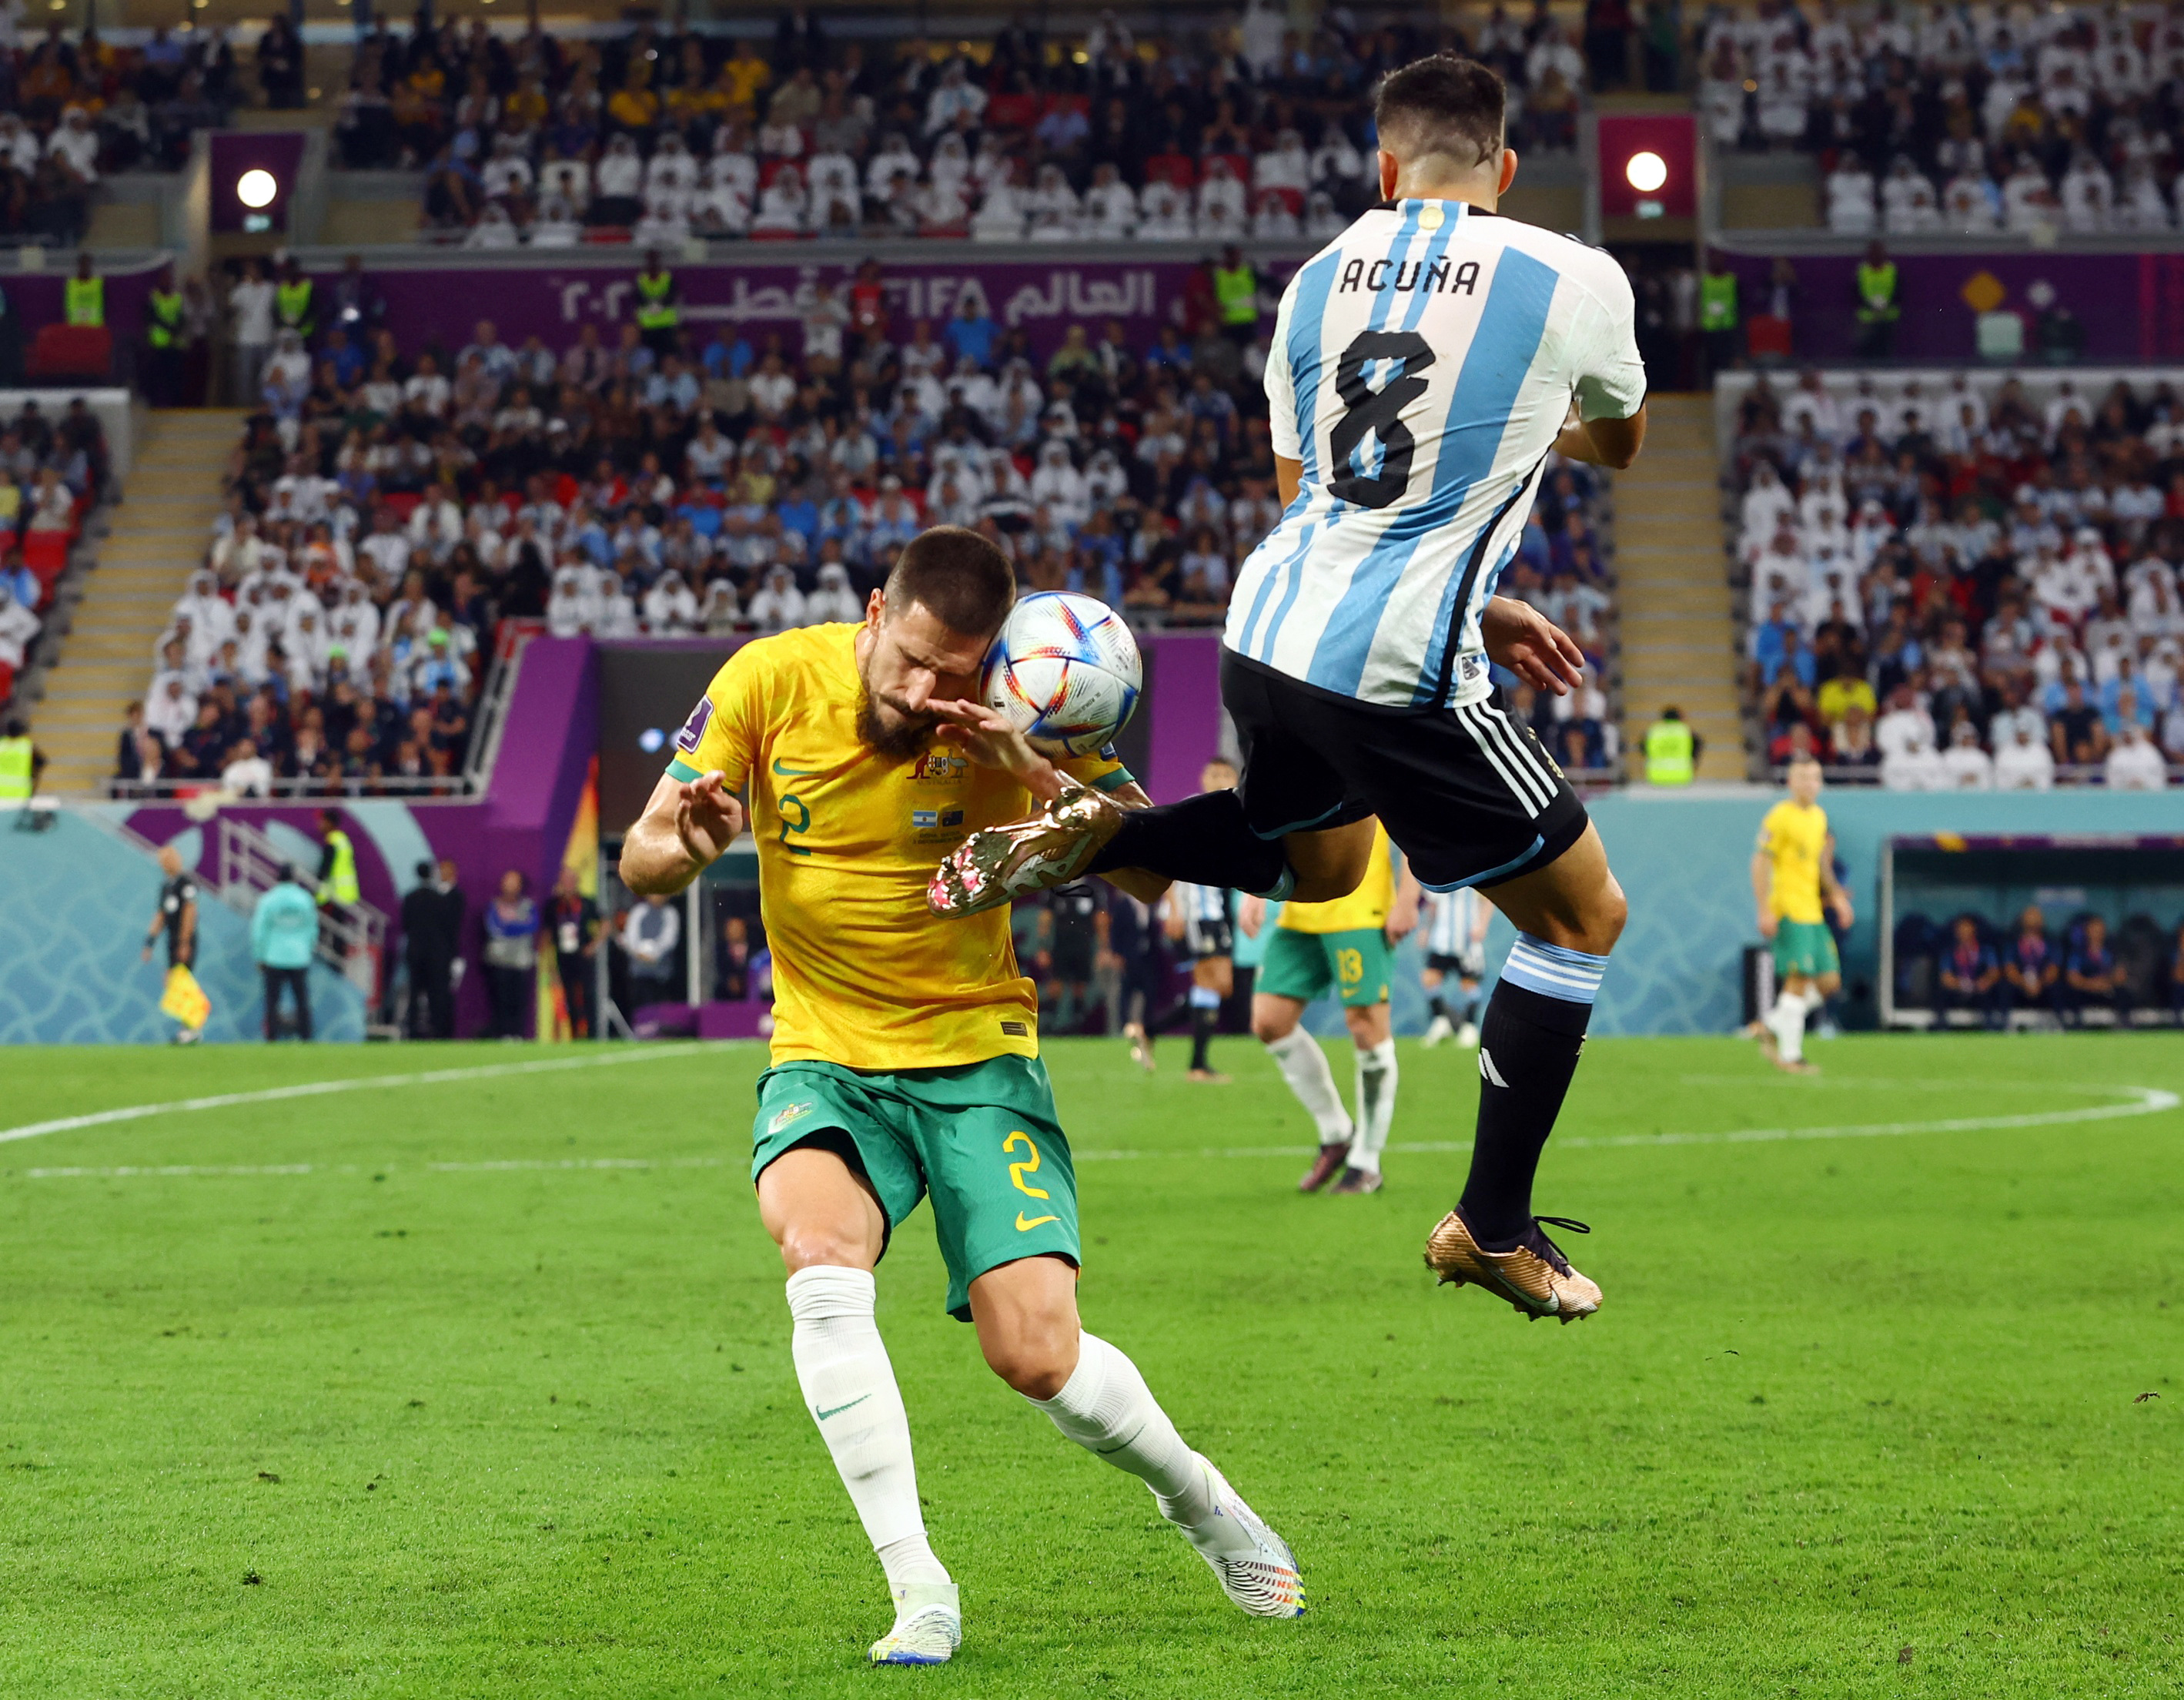 Acuña, clave por la izquierda en el ataque de la Selección (REUTERS/Bernadett Szabo)